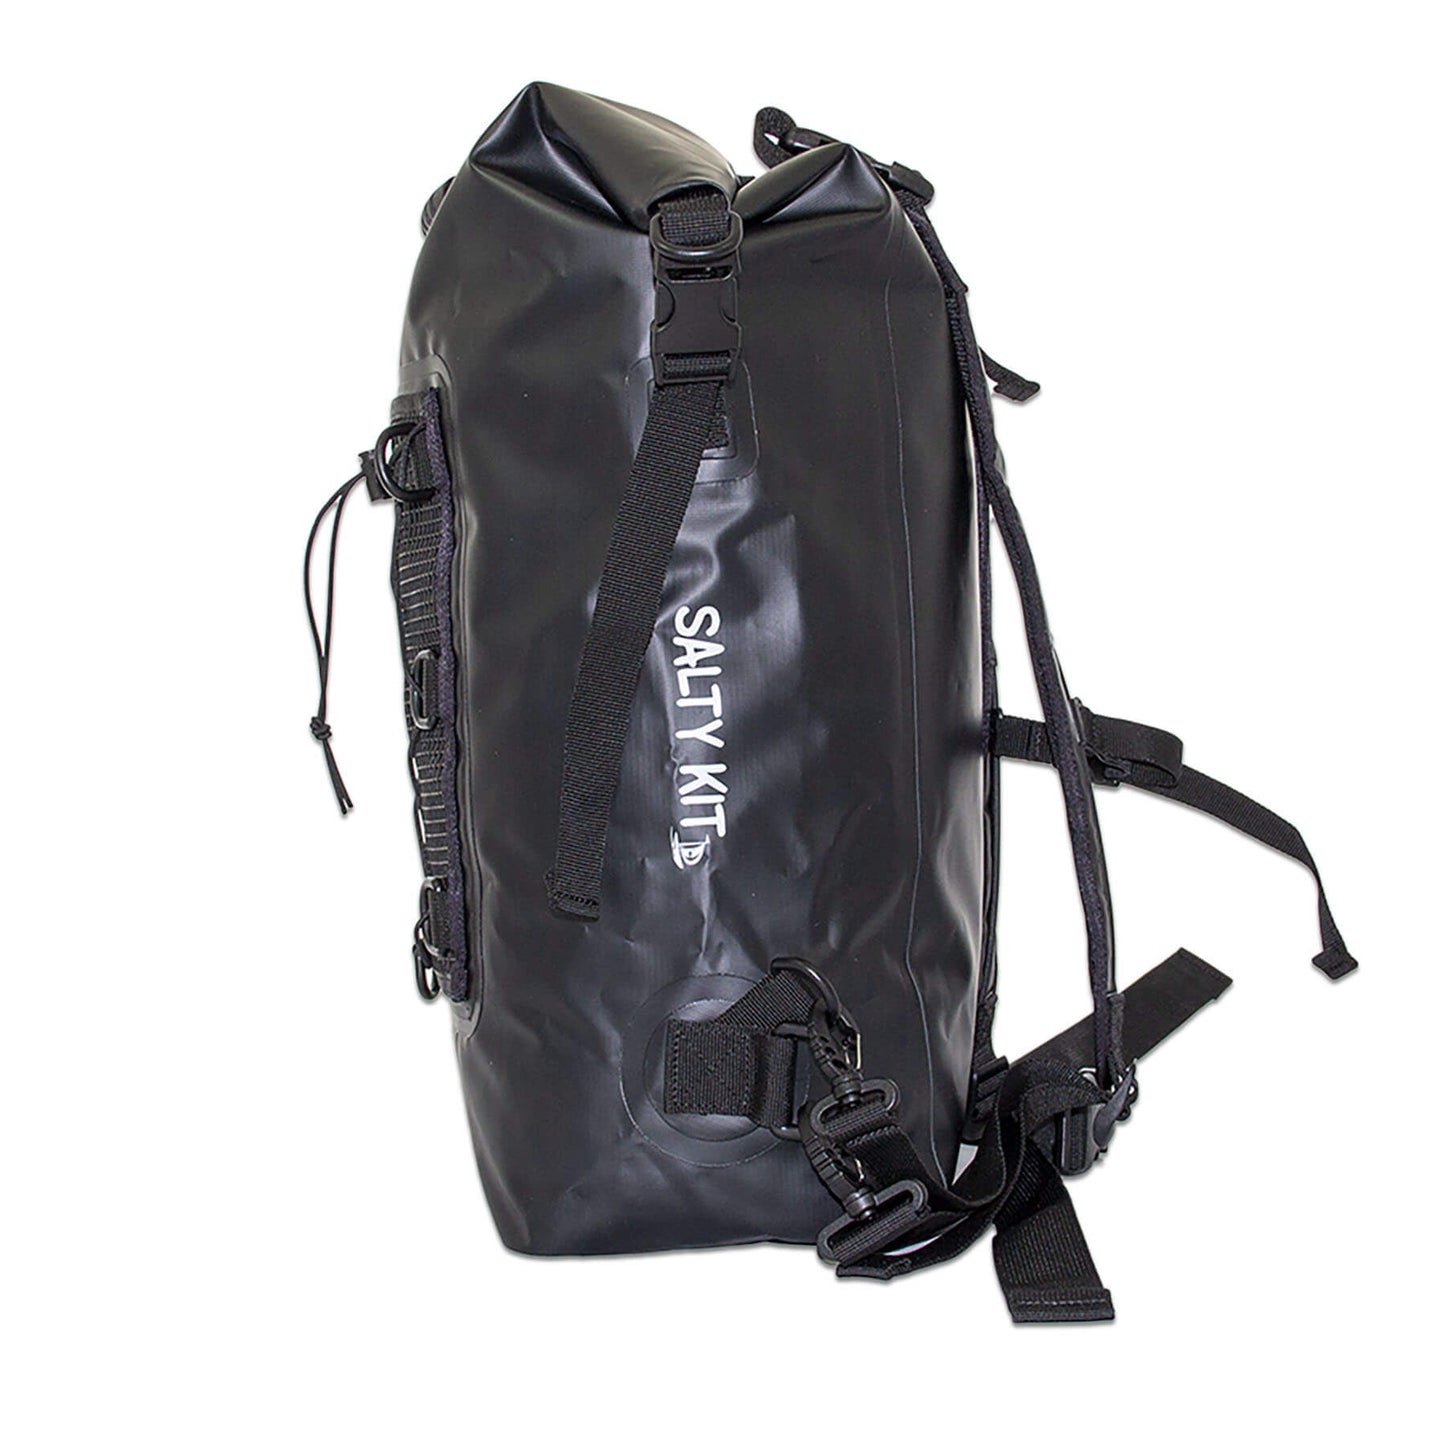 waterproof dry bag backpack 30 litres in black side view